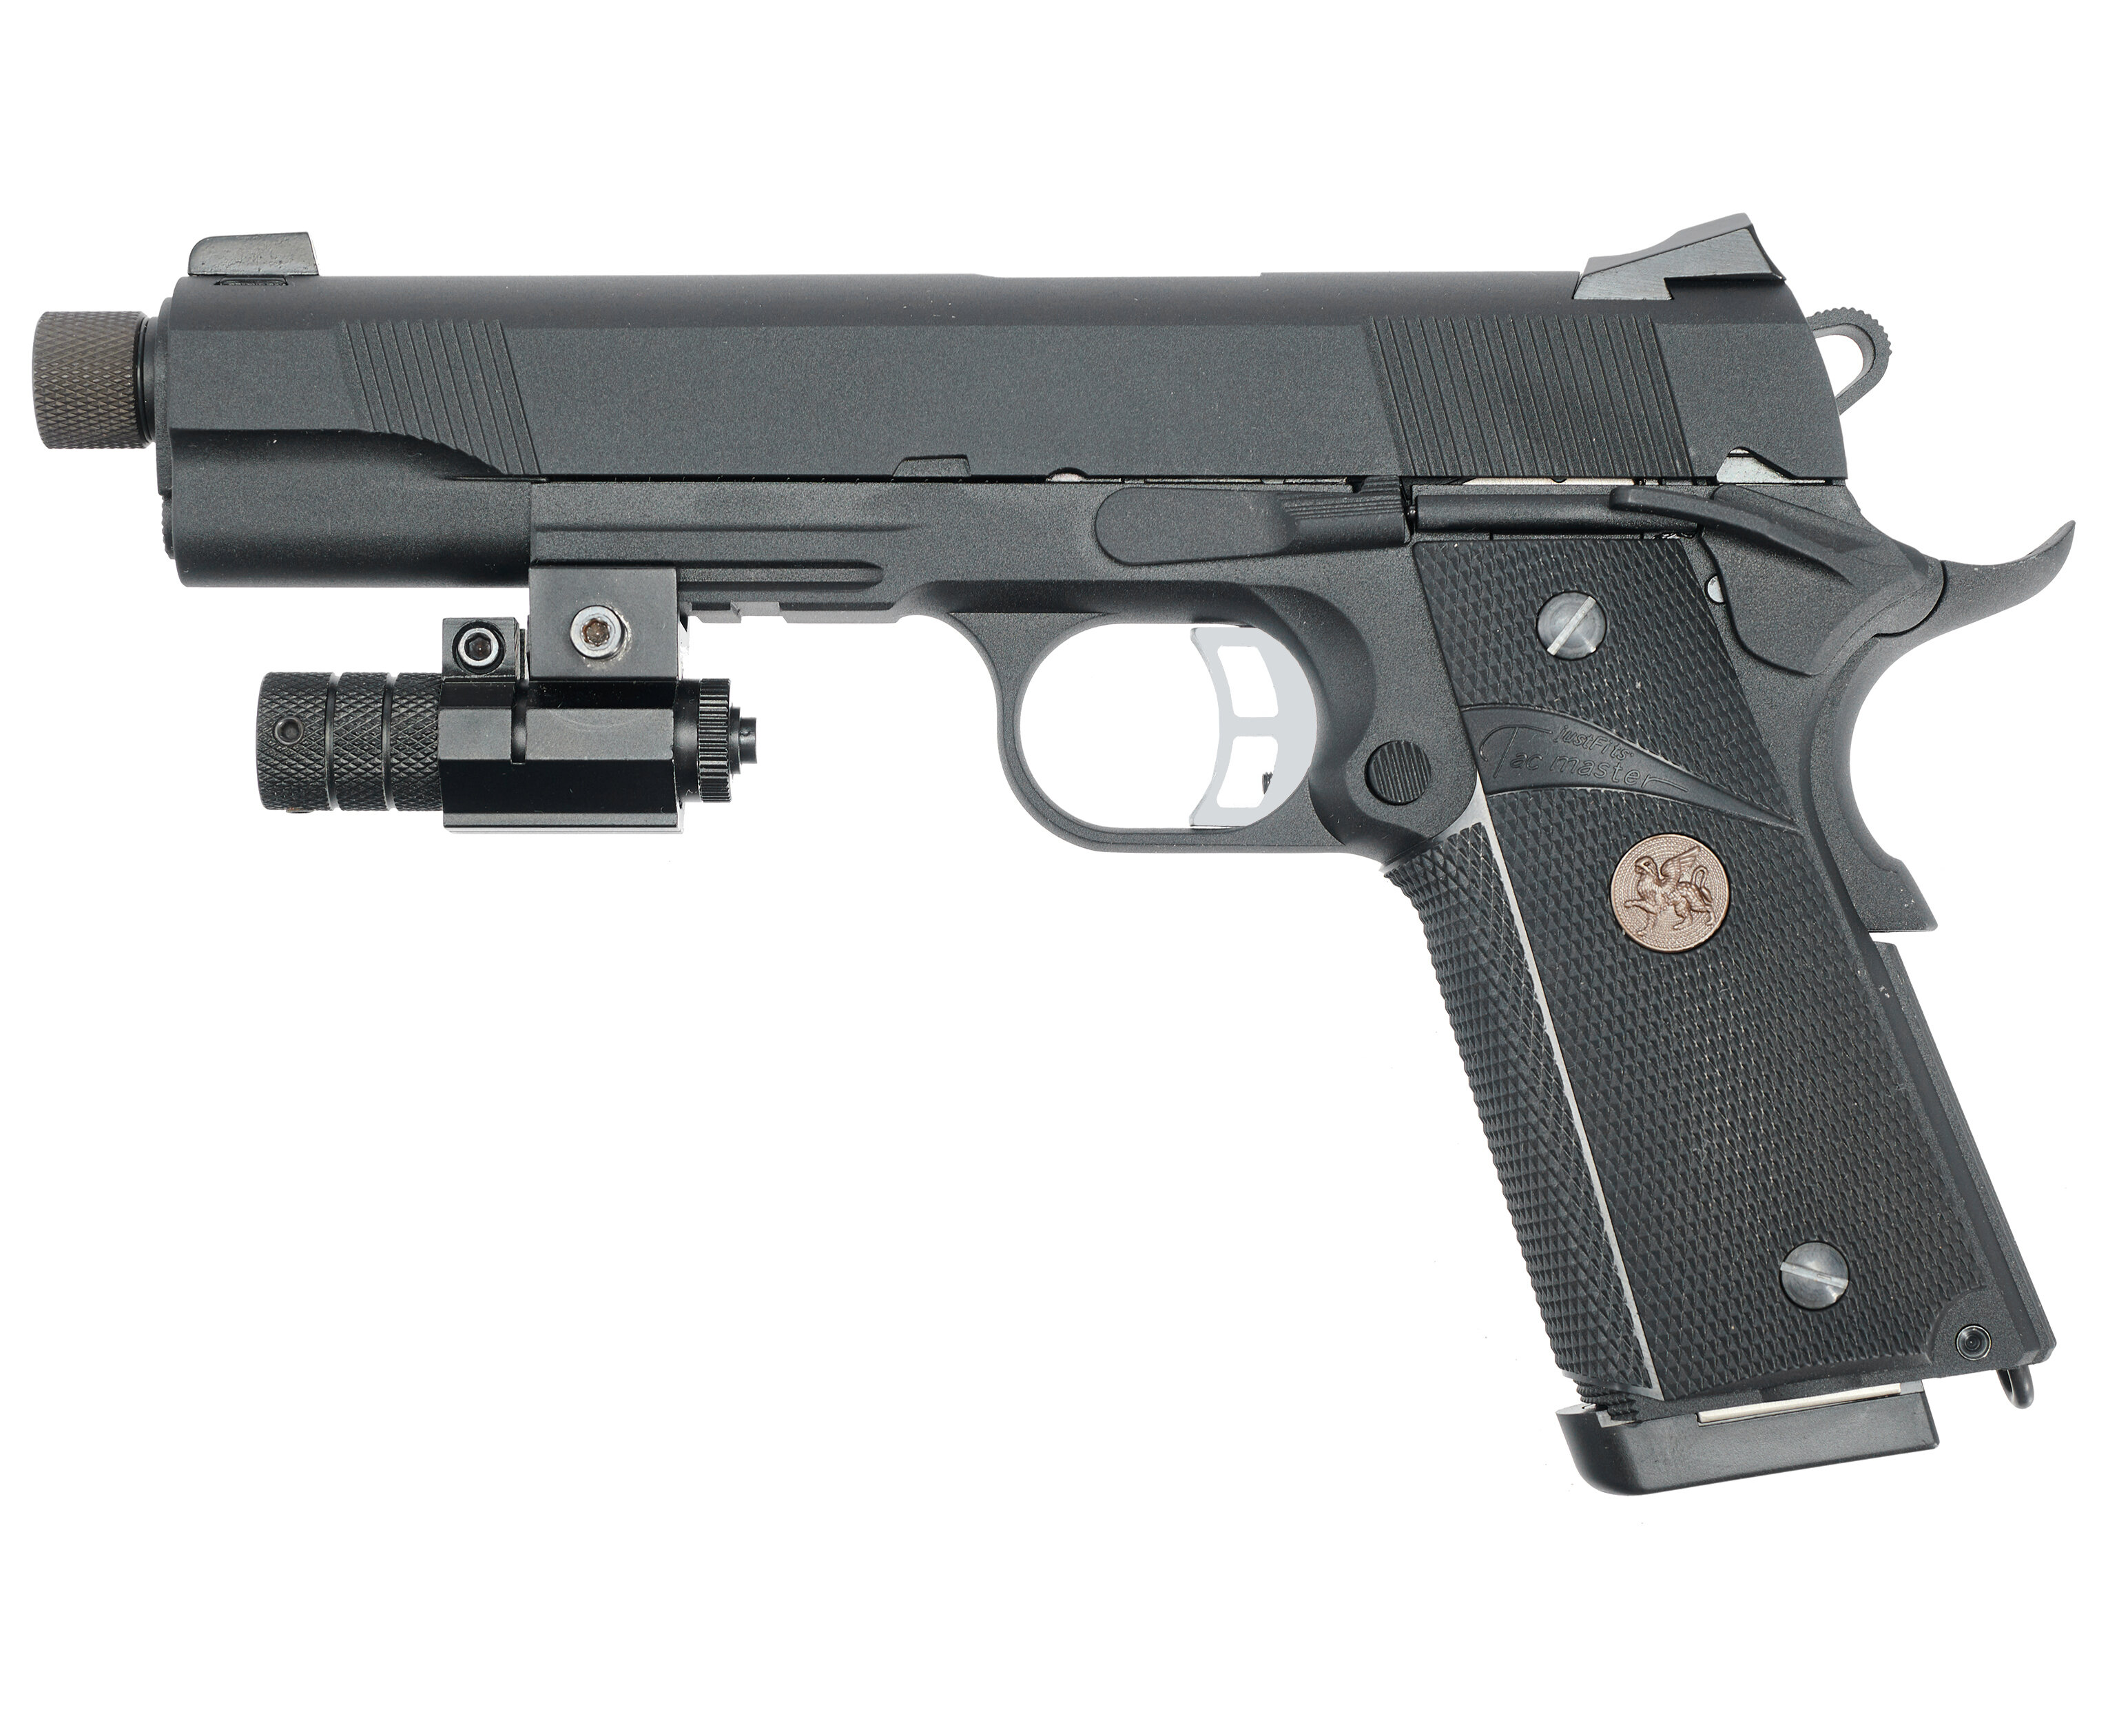 Страйкбольный пистолет KJW Colt M1911 M.E.U. (6 мм, GBB, Gas, удлиненный ствол)